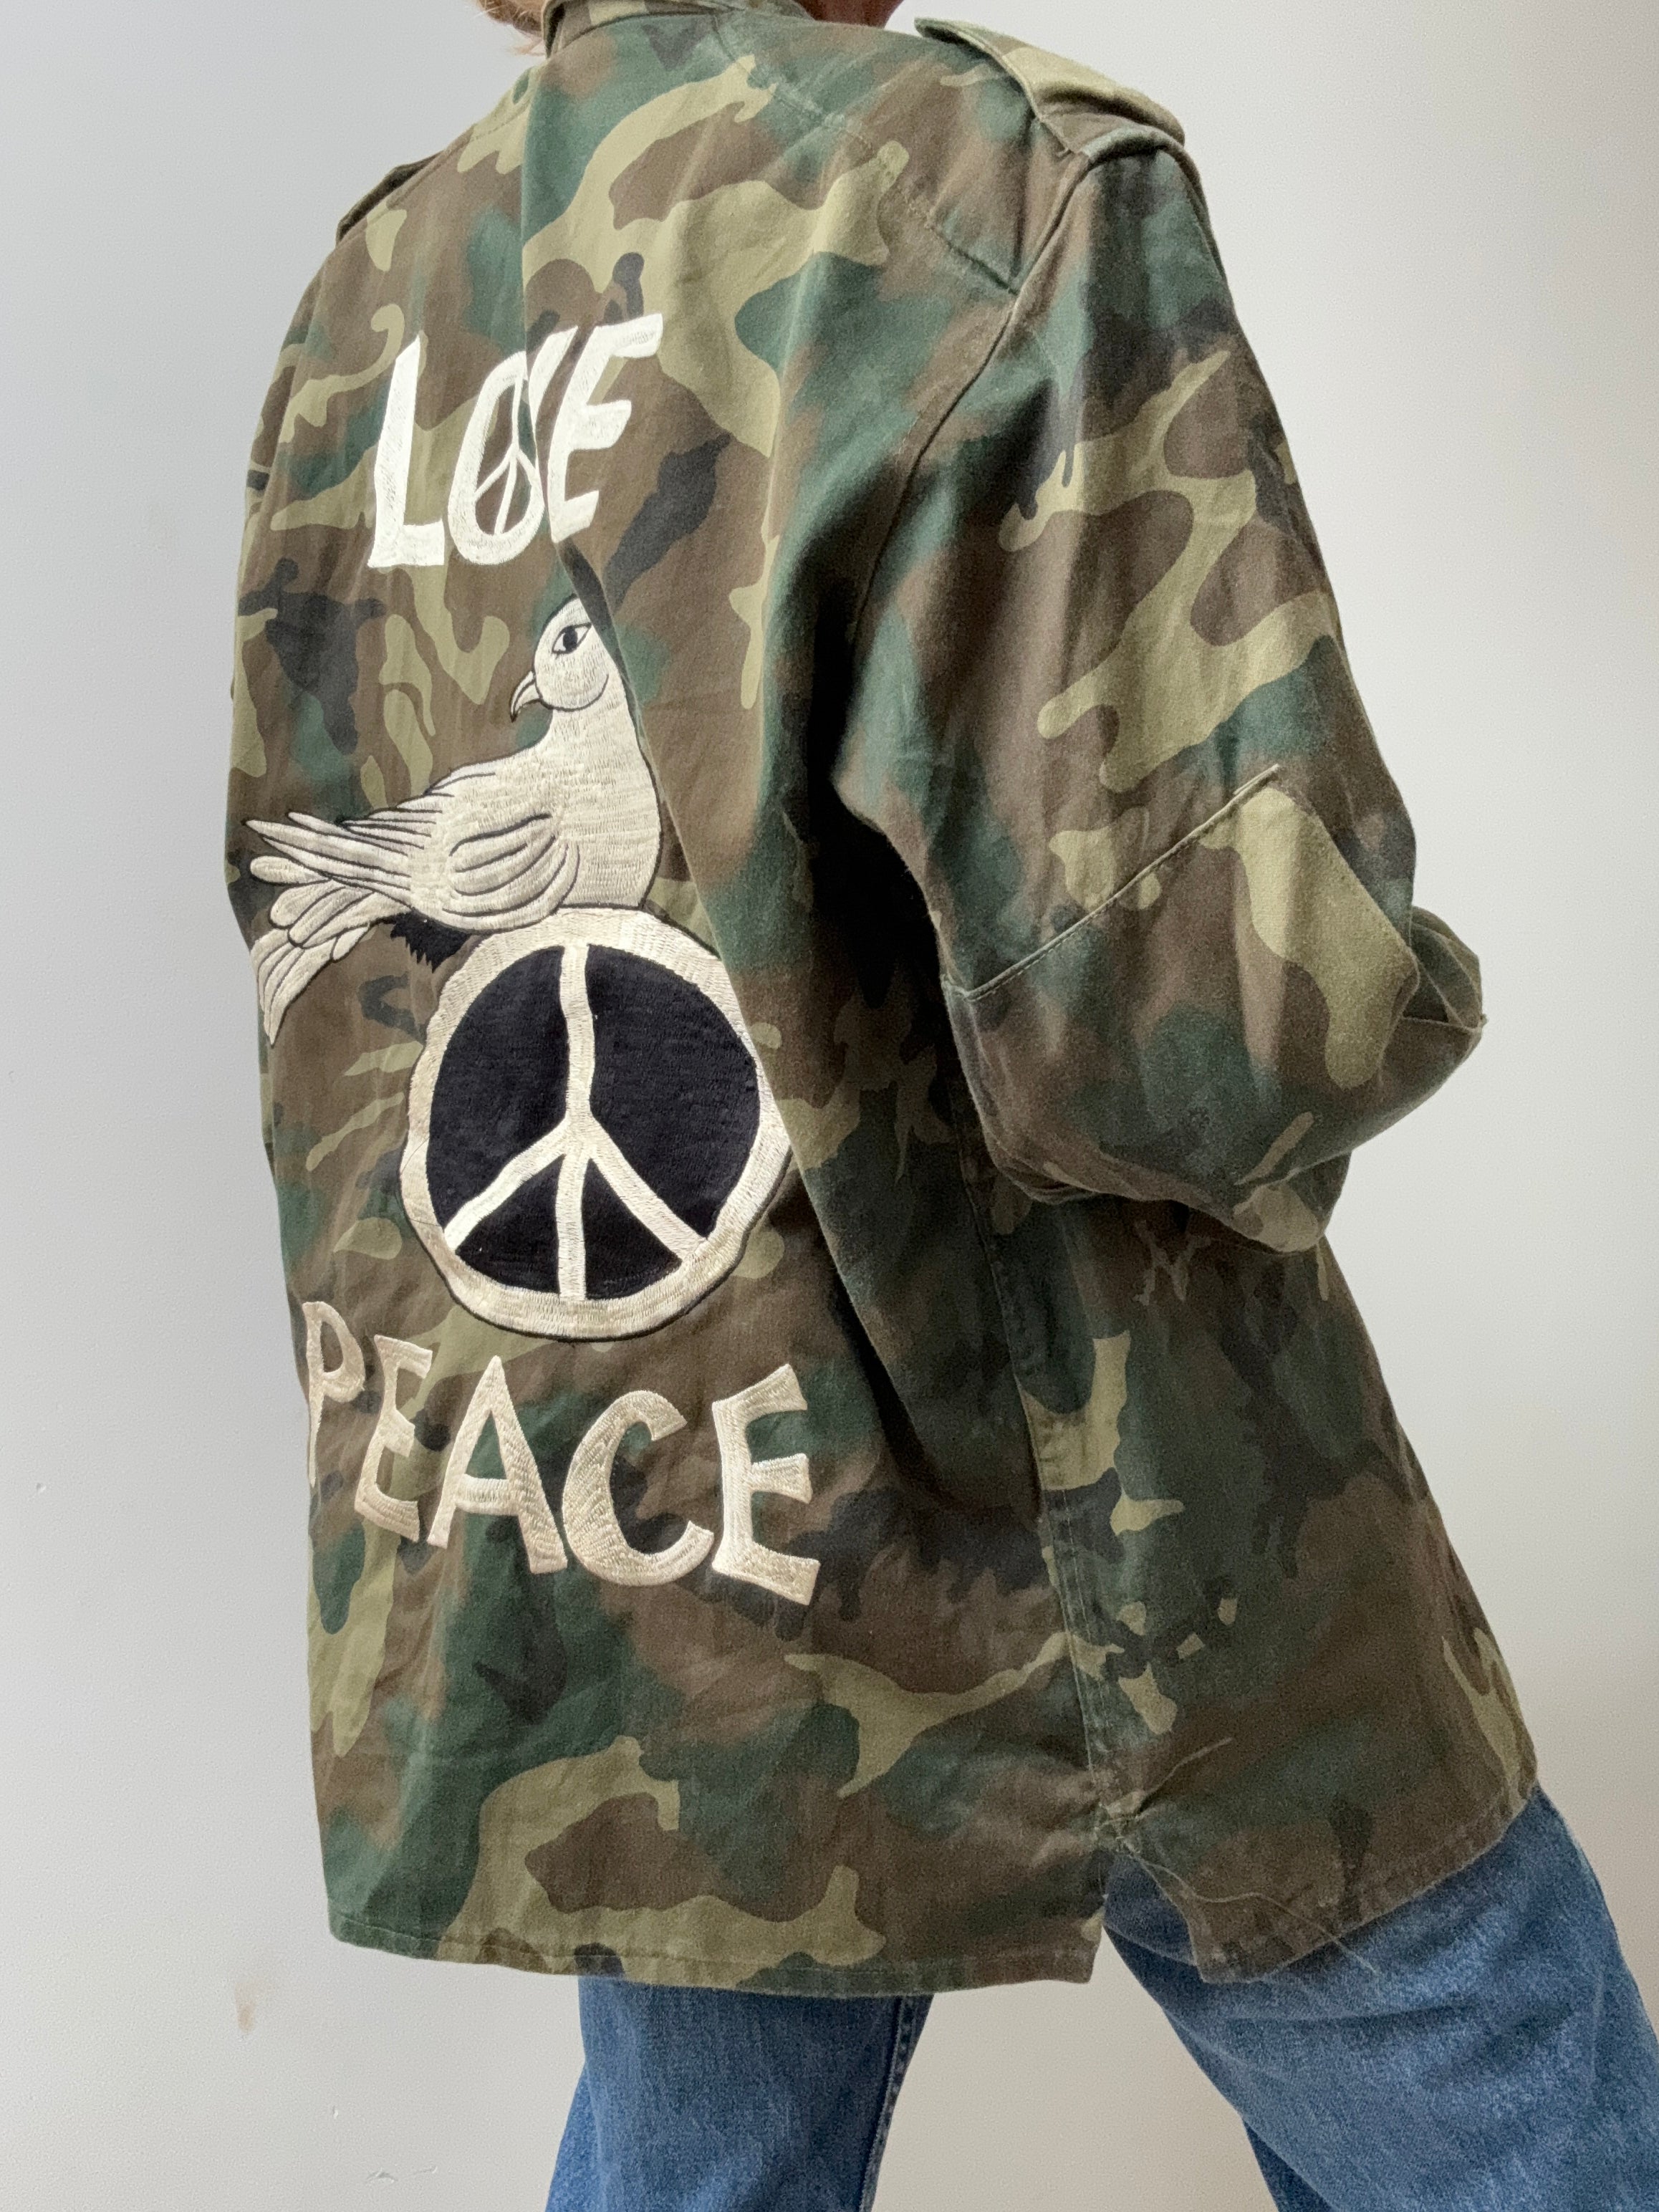 Future Nomads Jackets Small-Medium Peace Love Camo Army Shirt SS246